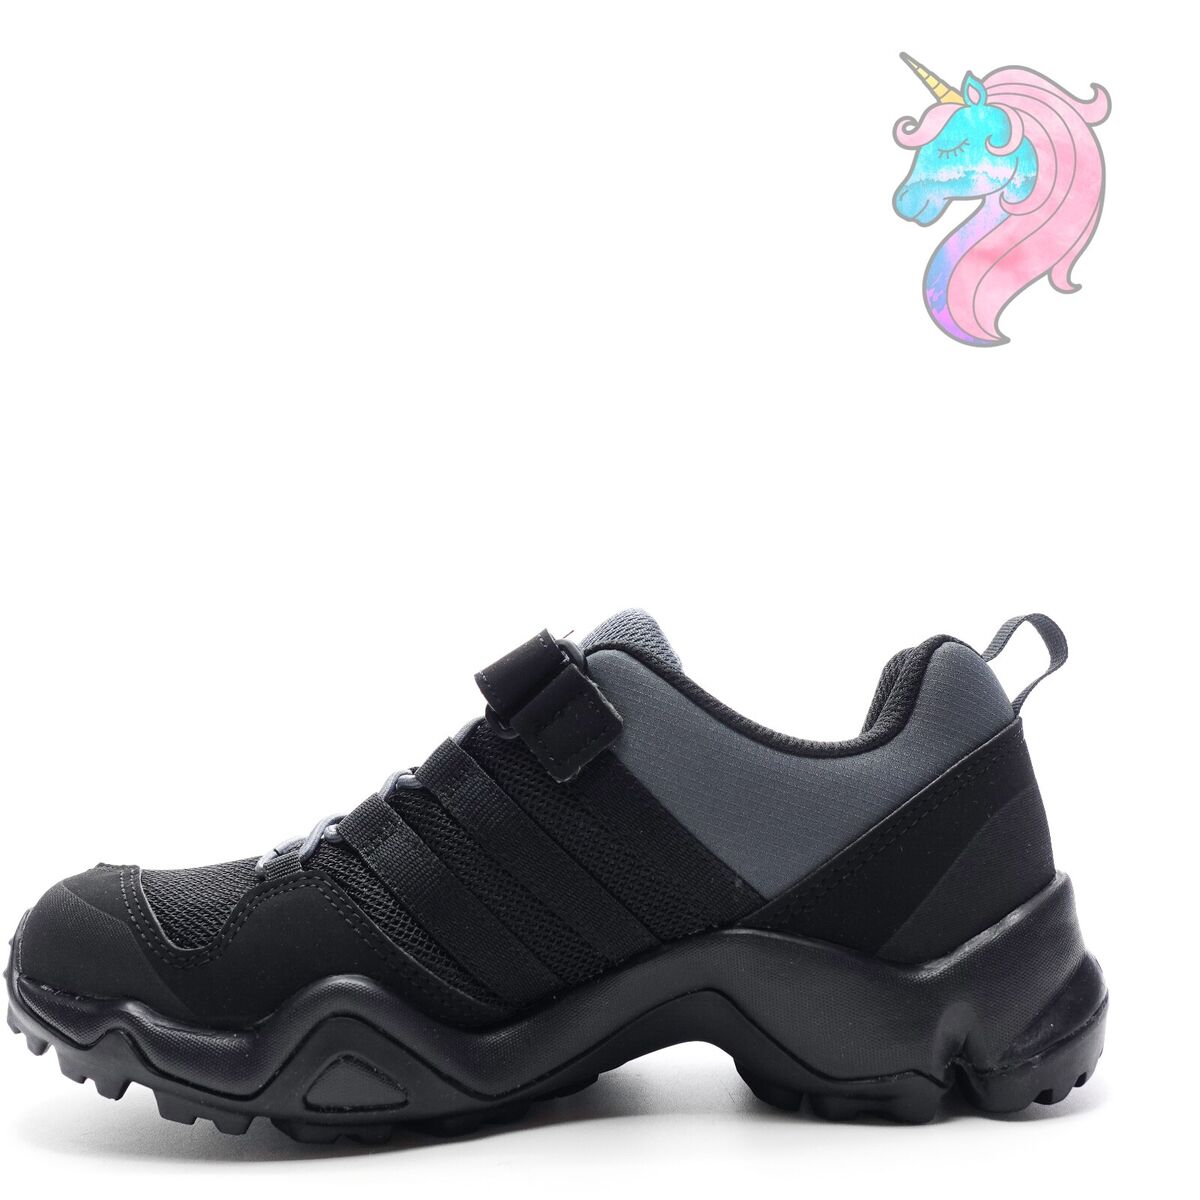 Adidas Terrex AX2R CF Hiking Shoes Black/Onix BB1930 Size 4.5Y | eBay